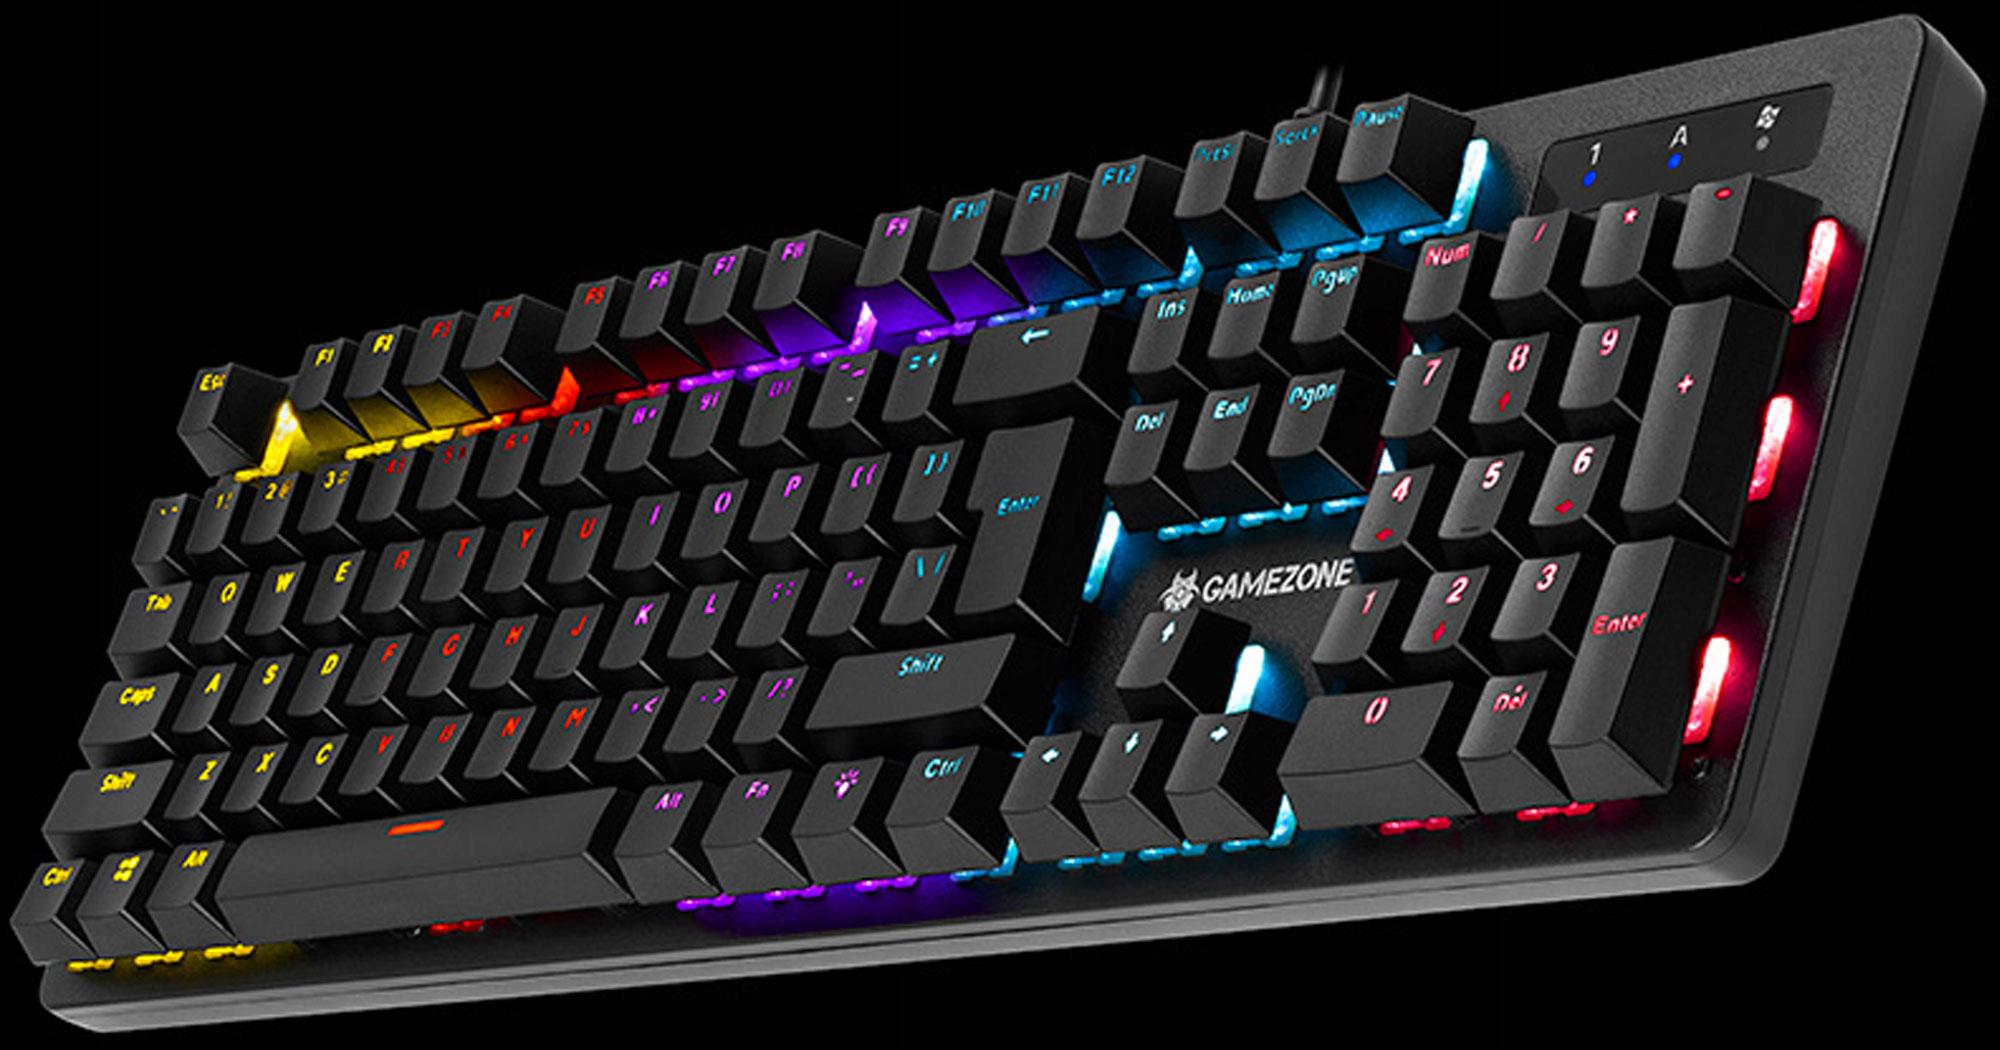 Doskonała klawiatura gamingowa z tęczowym podświetleniem RGB - dla wszystkich spragnionych nowych wrażeń wizualnych!